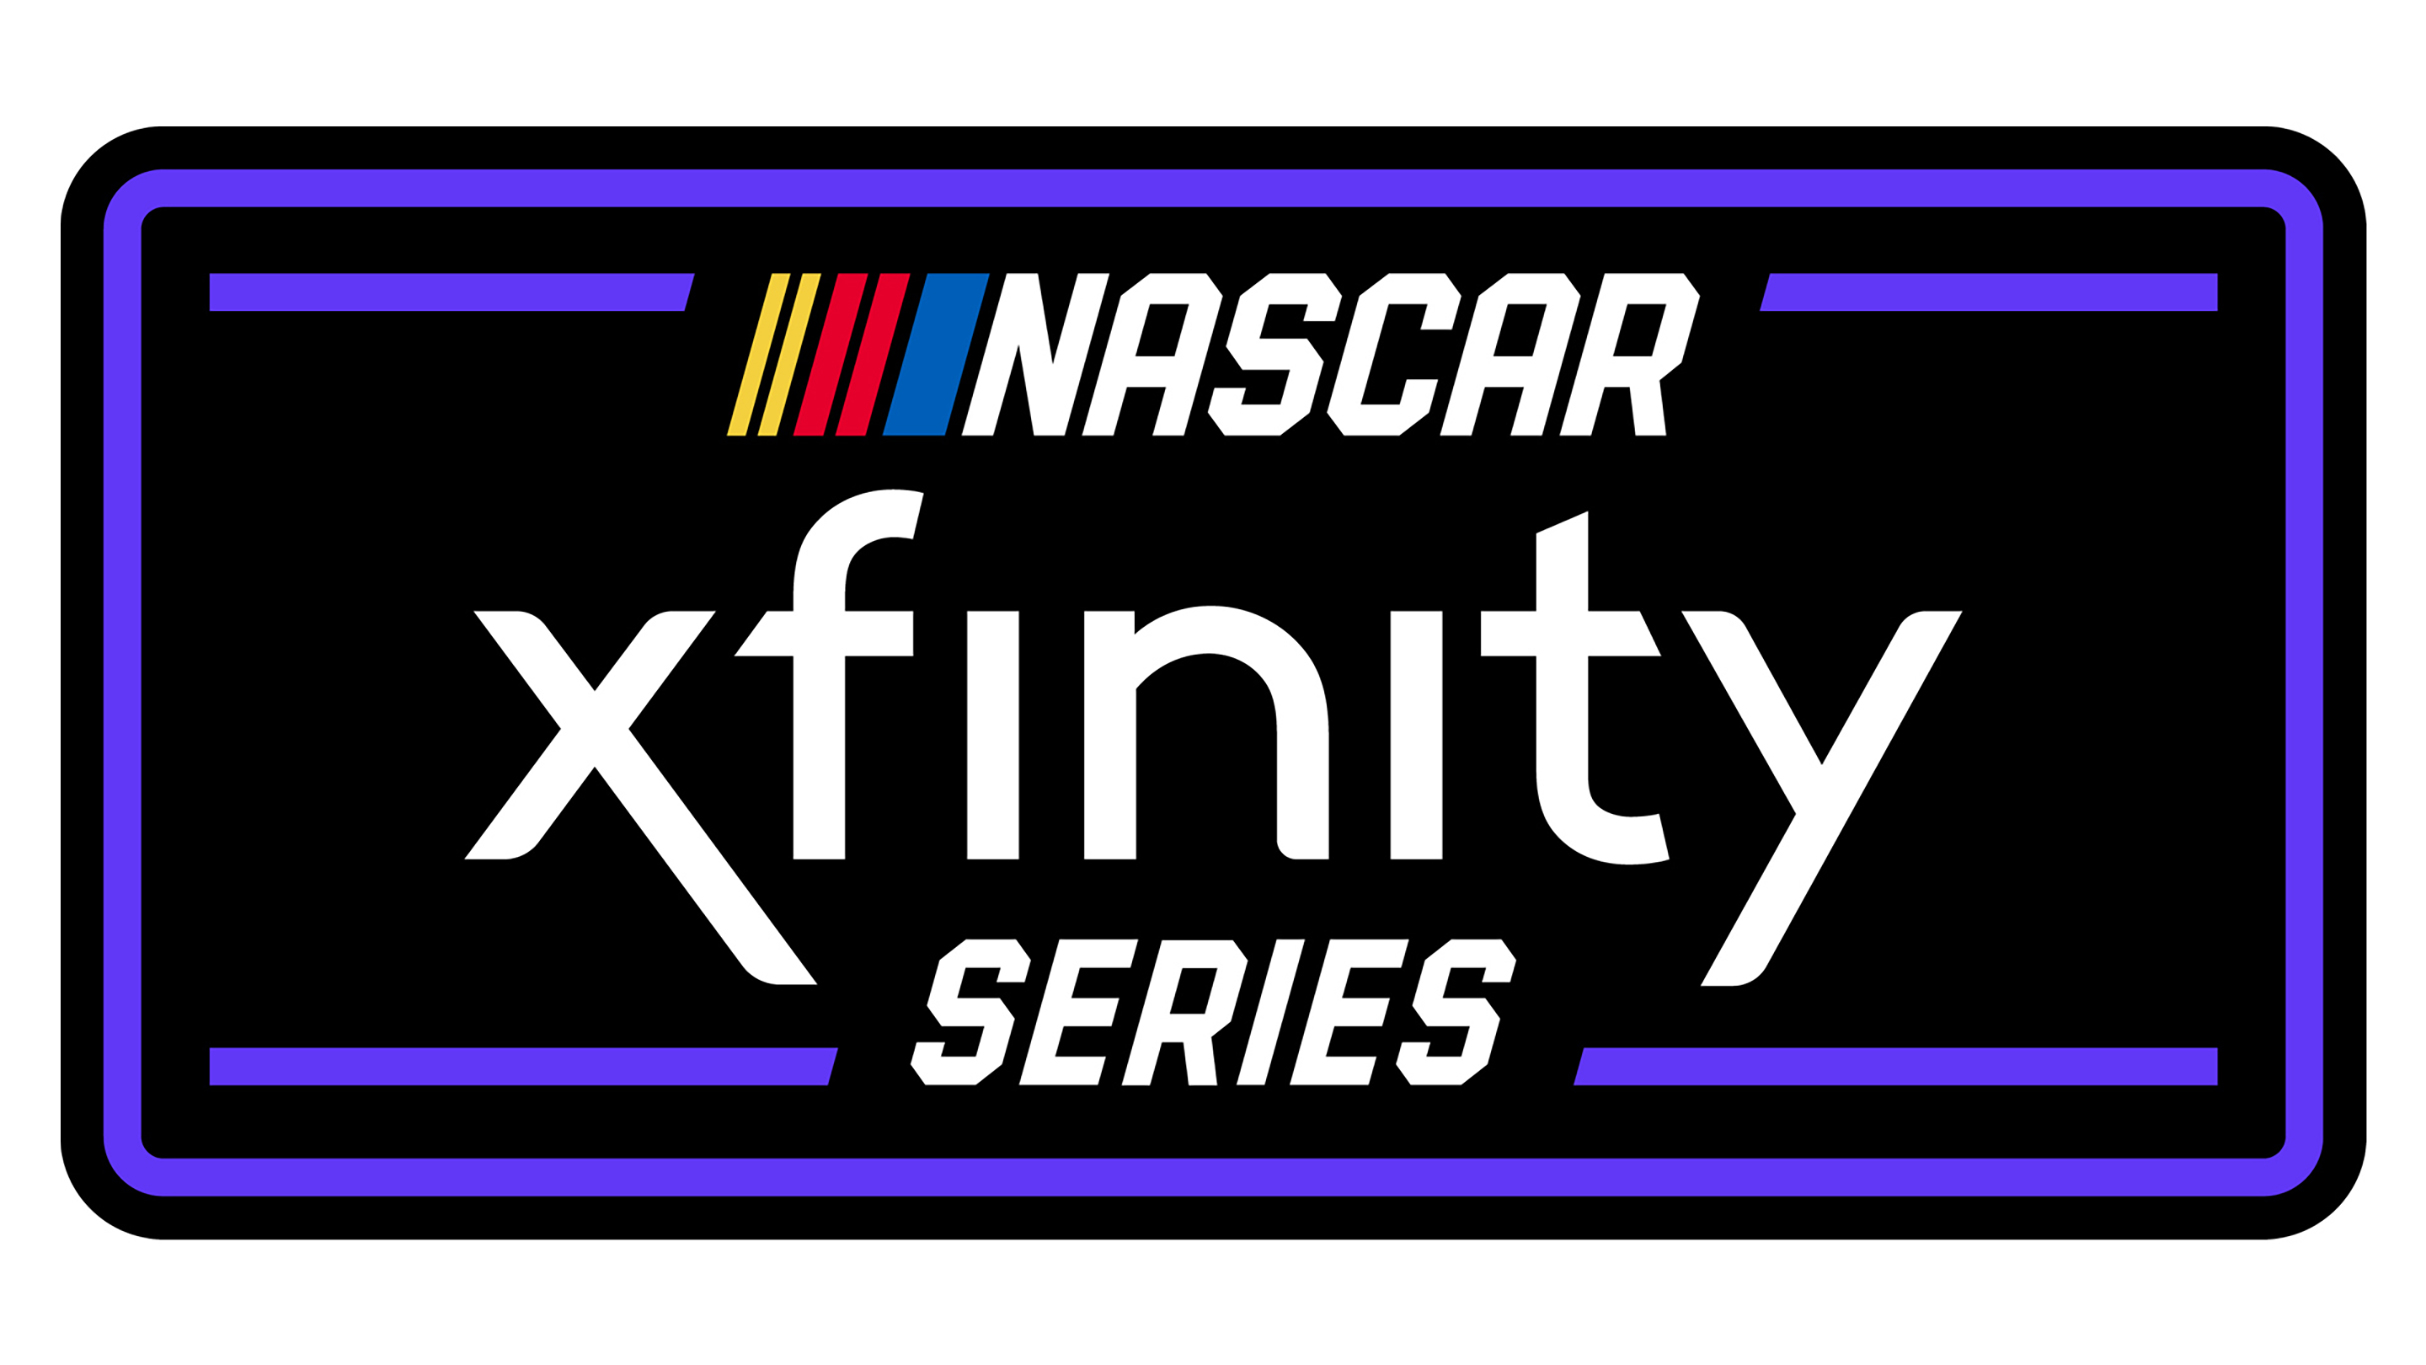 NASCAR XFINITY Series